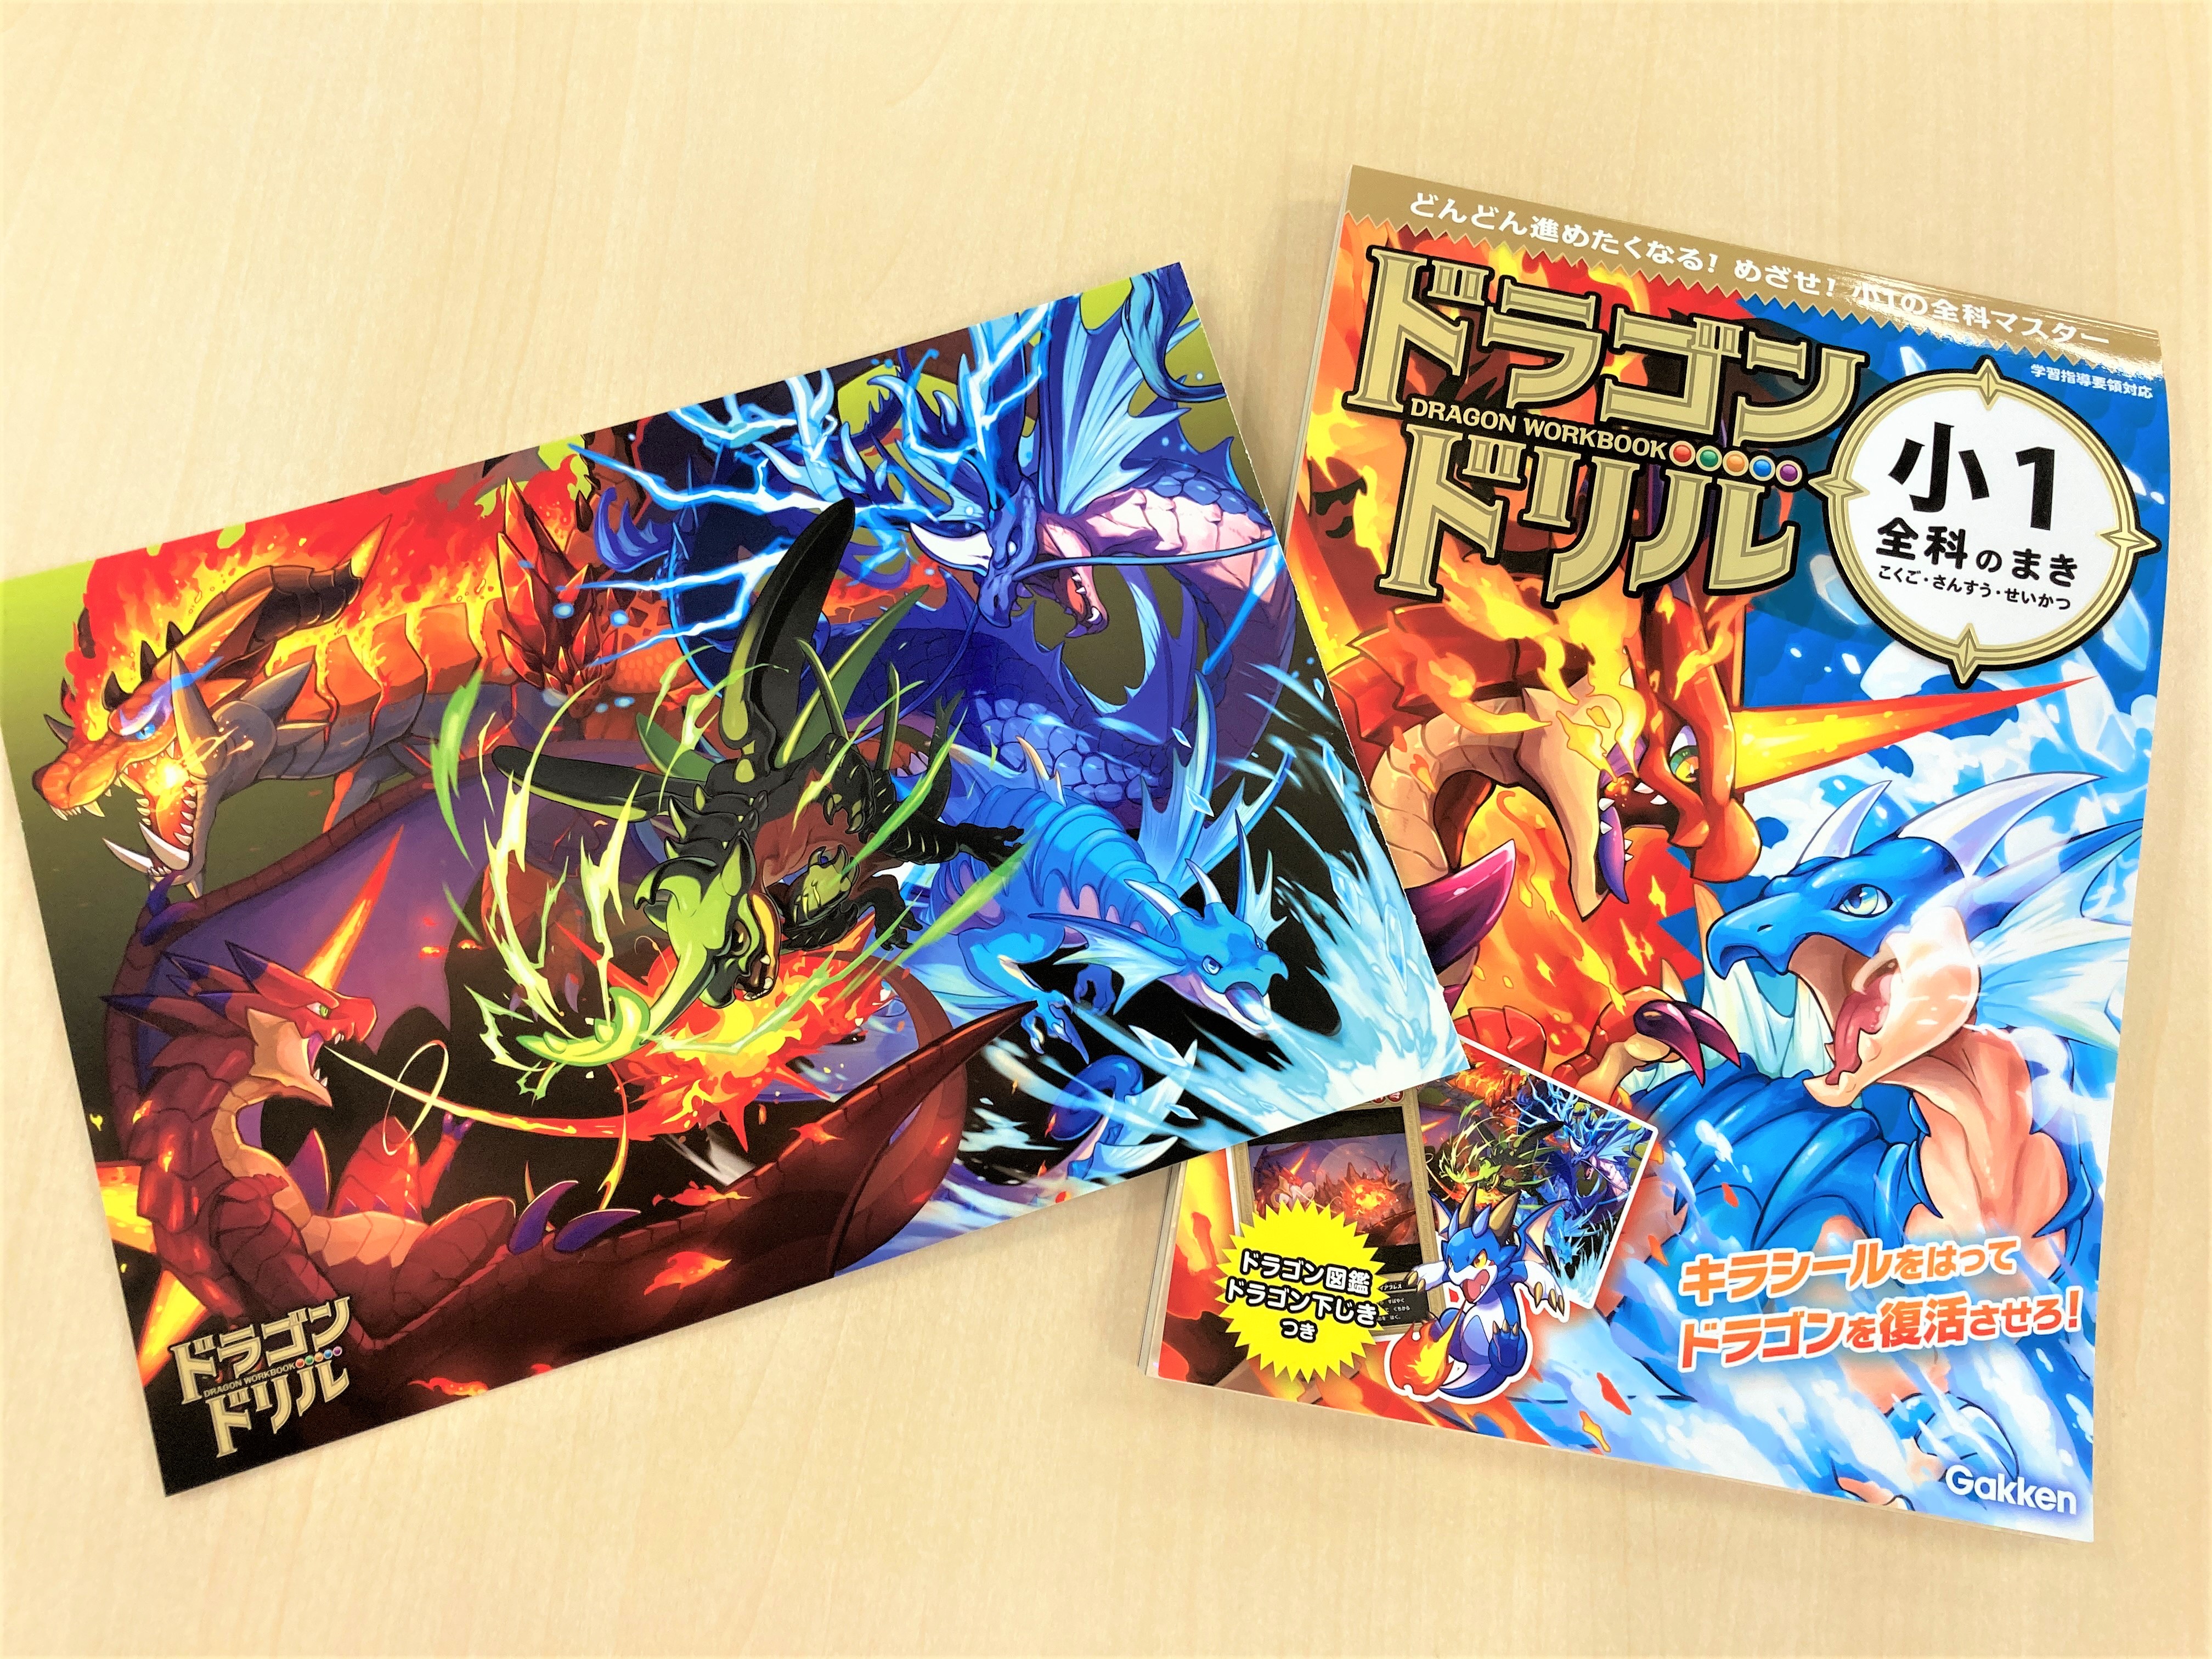 ２体のドラゴンが戦う『小１全科のまき』の表紙。写真左は「ドラゴンしたじき」画像